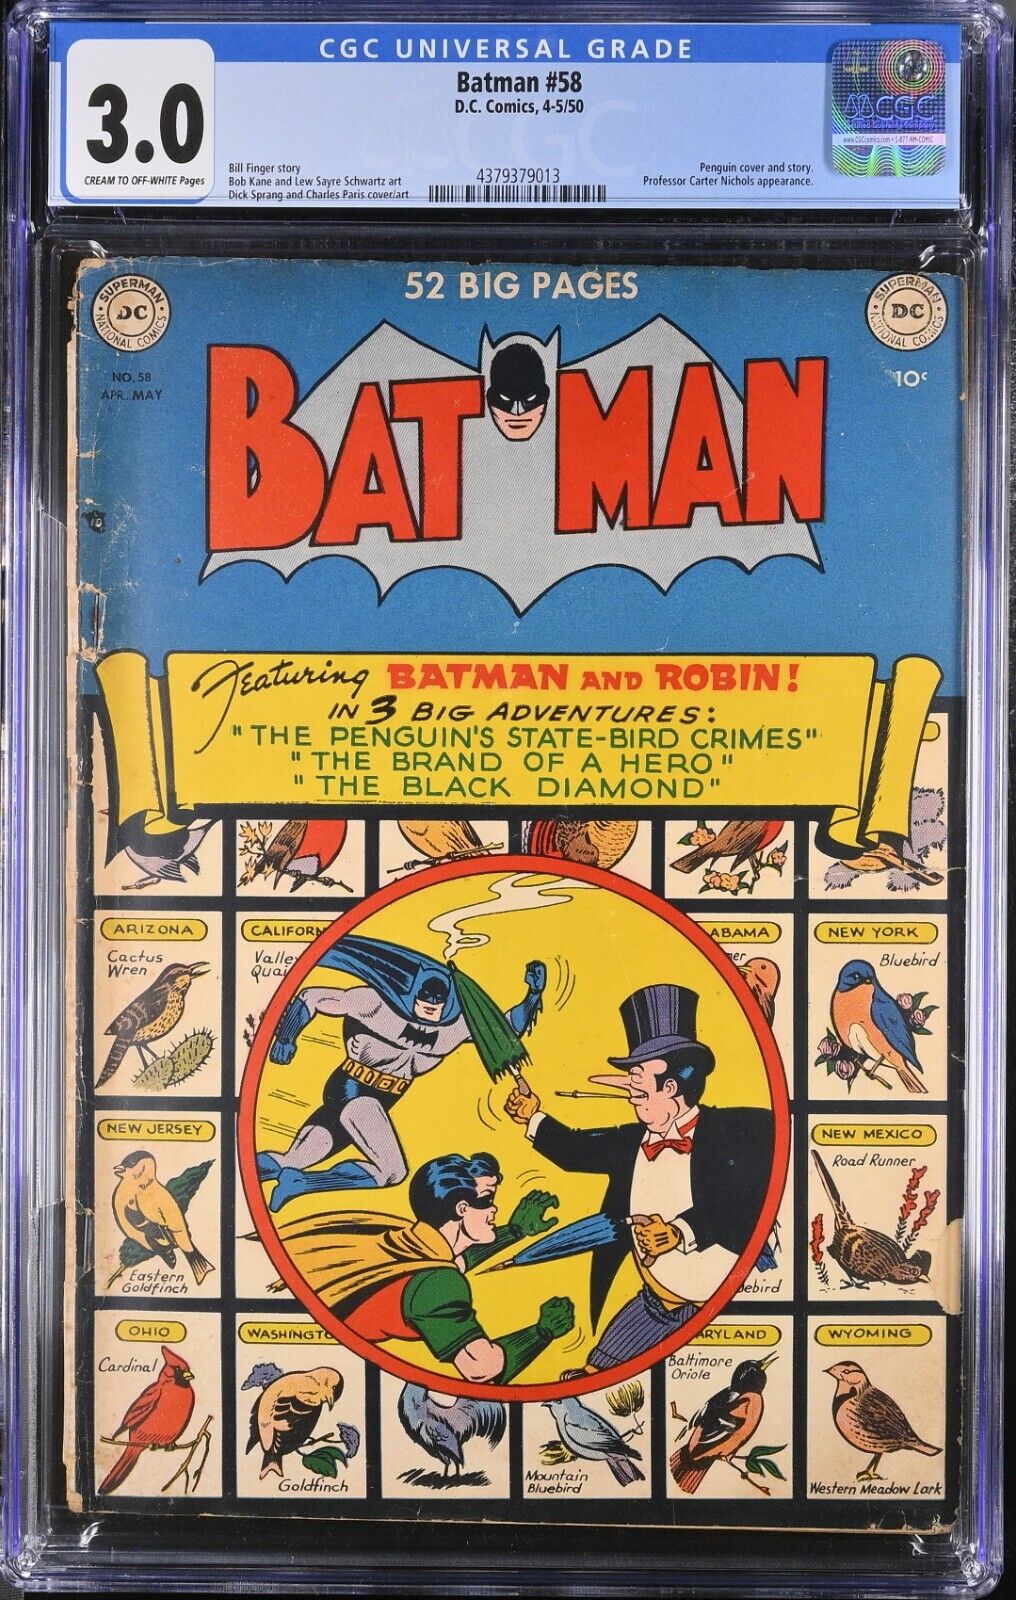 1950 D.C. Comics Batman 58 CGC 3.0. Penguin Cover